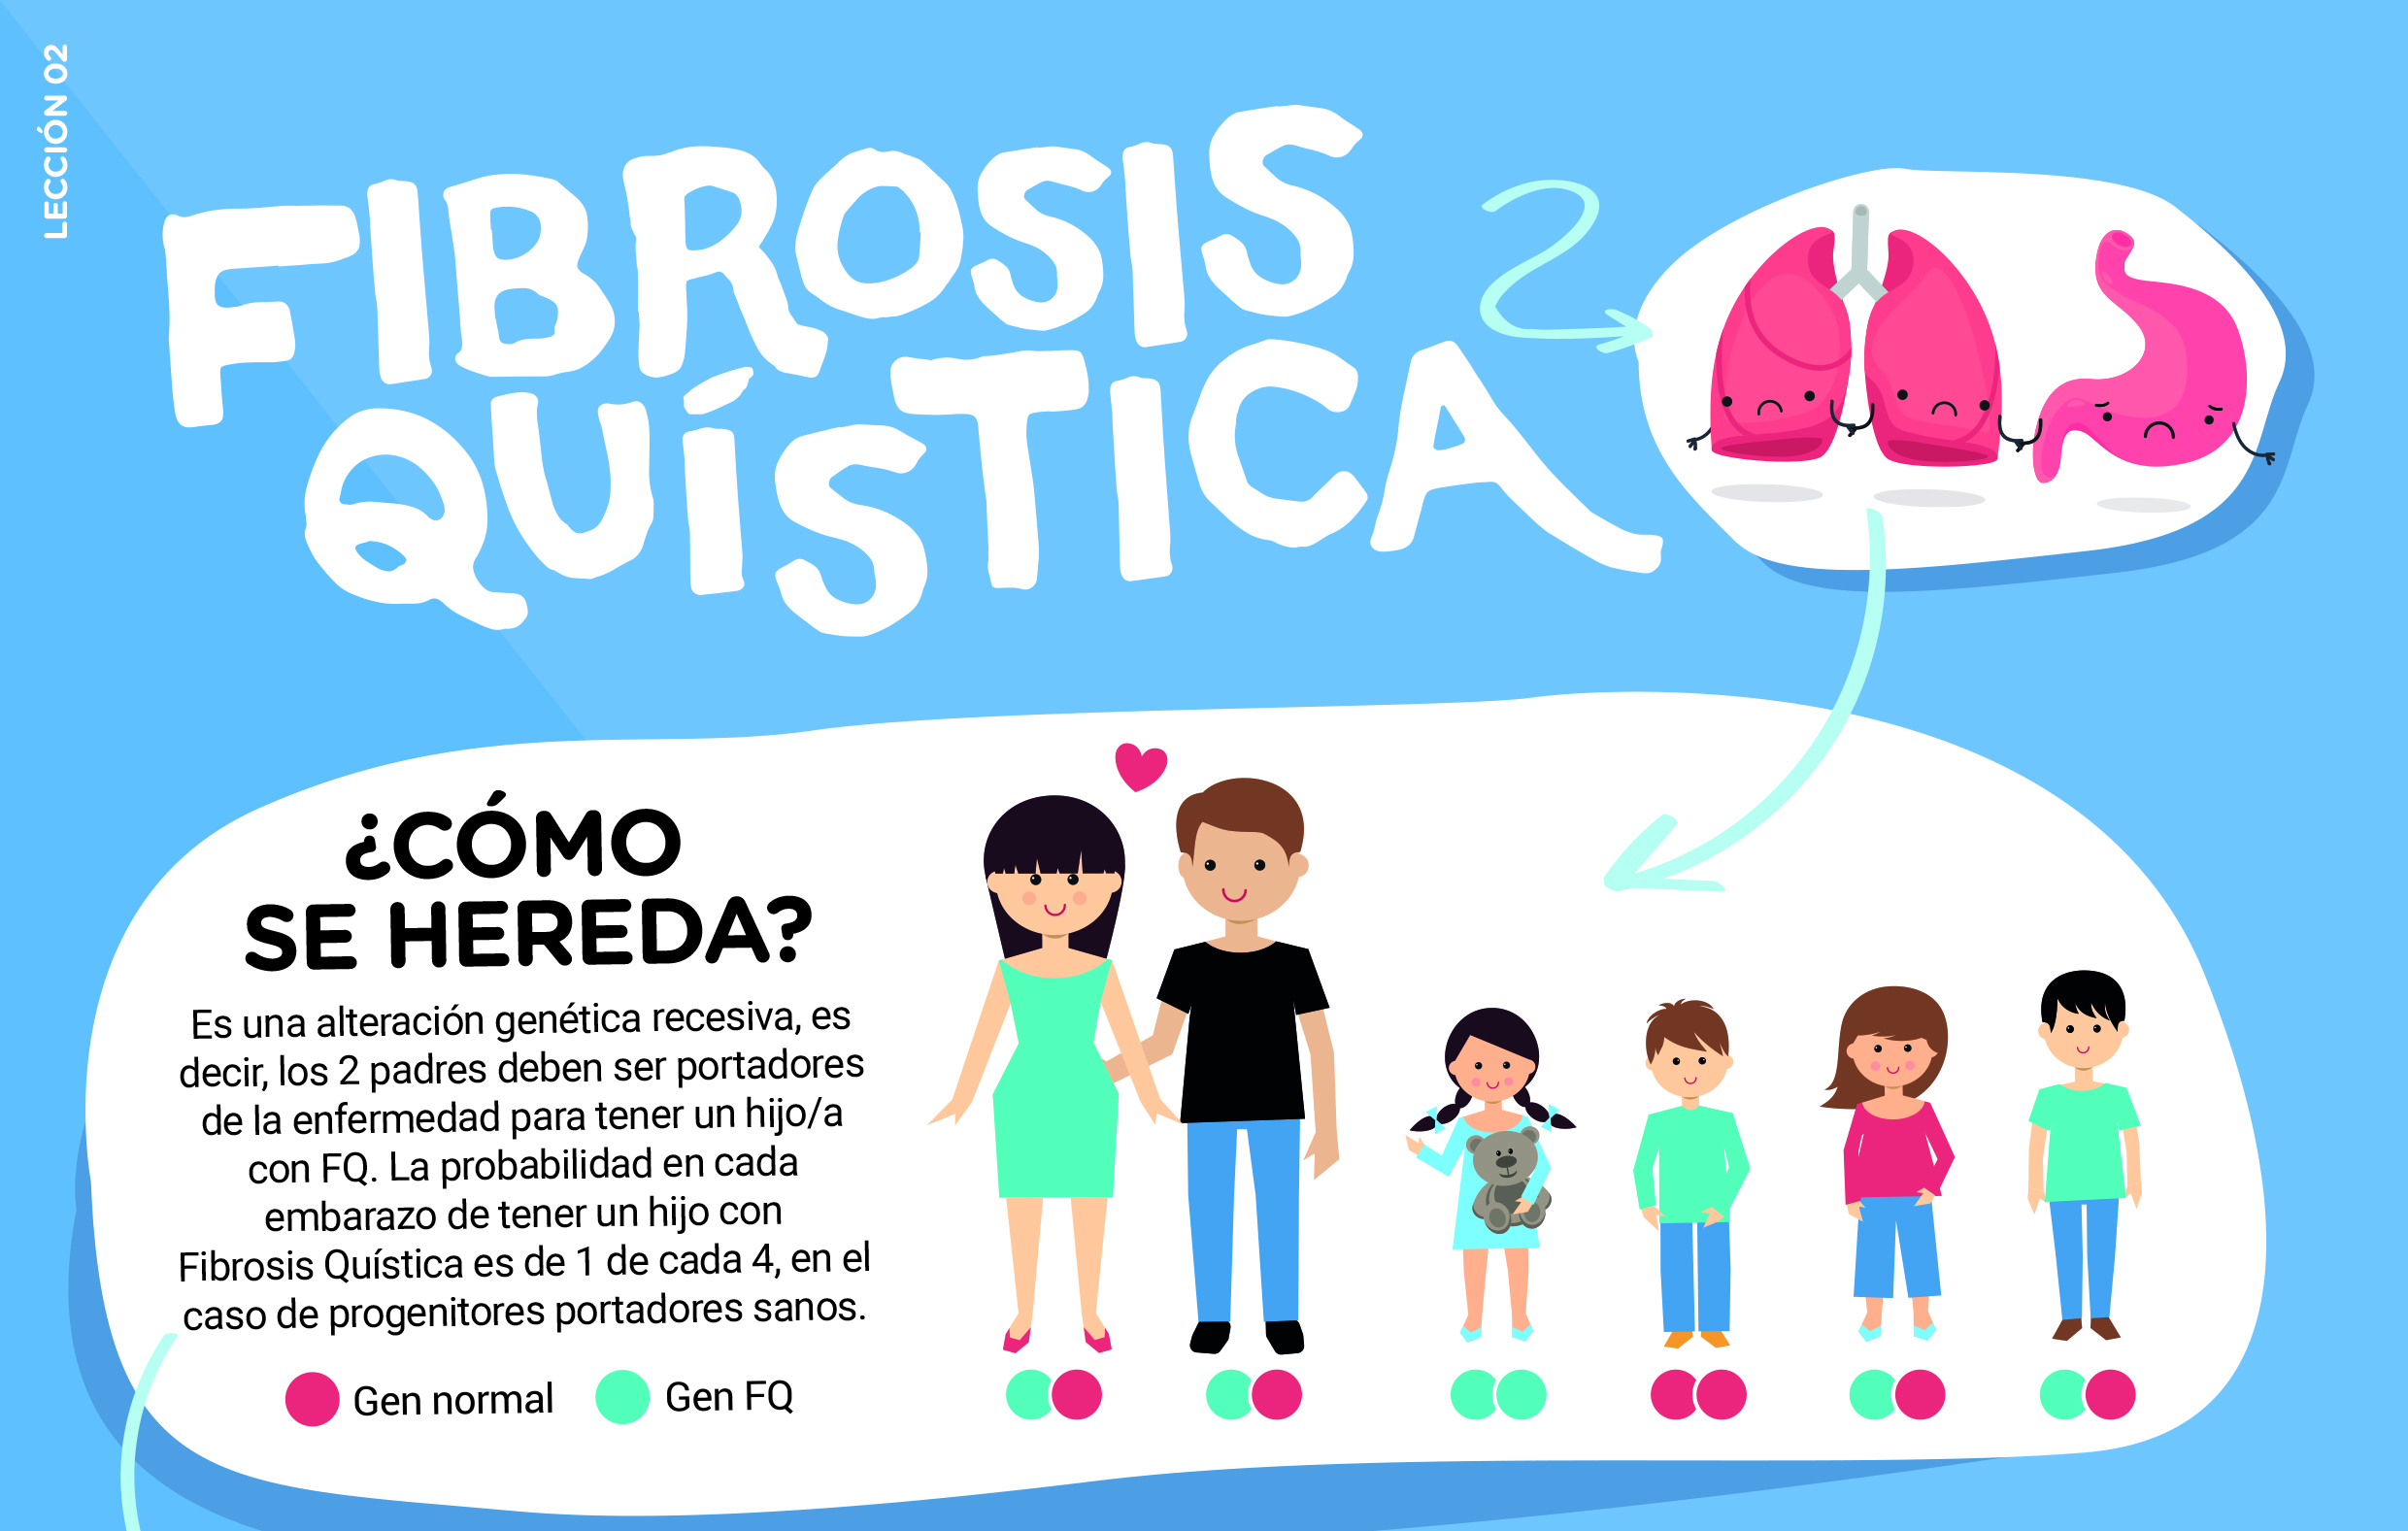 federacion española fibrosis quistica comienza la semana europea de la fibrosis quistica con una campana de concienciacion sobre la enfermedad